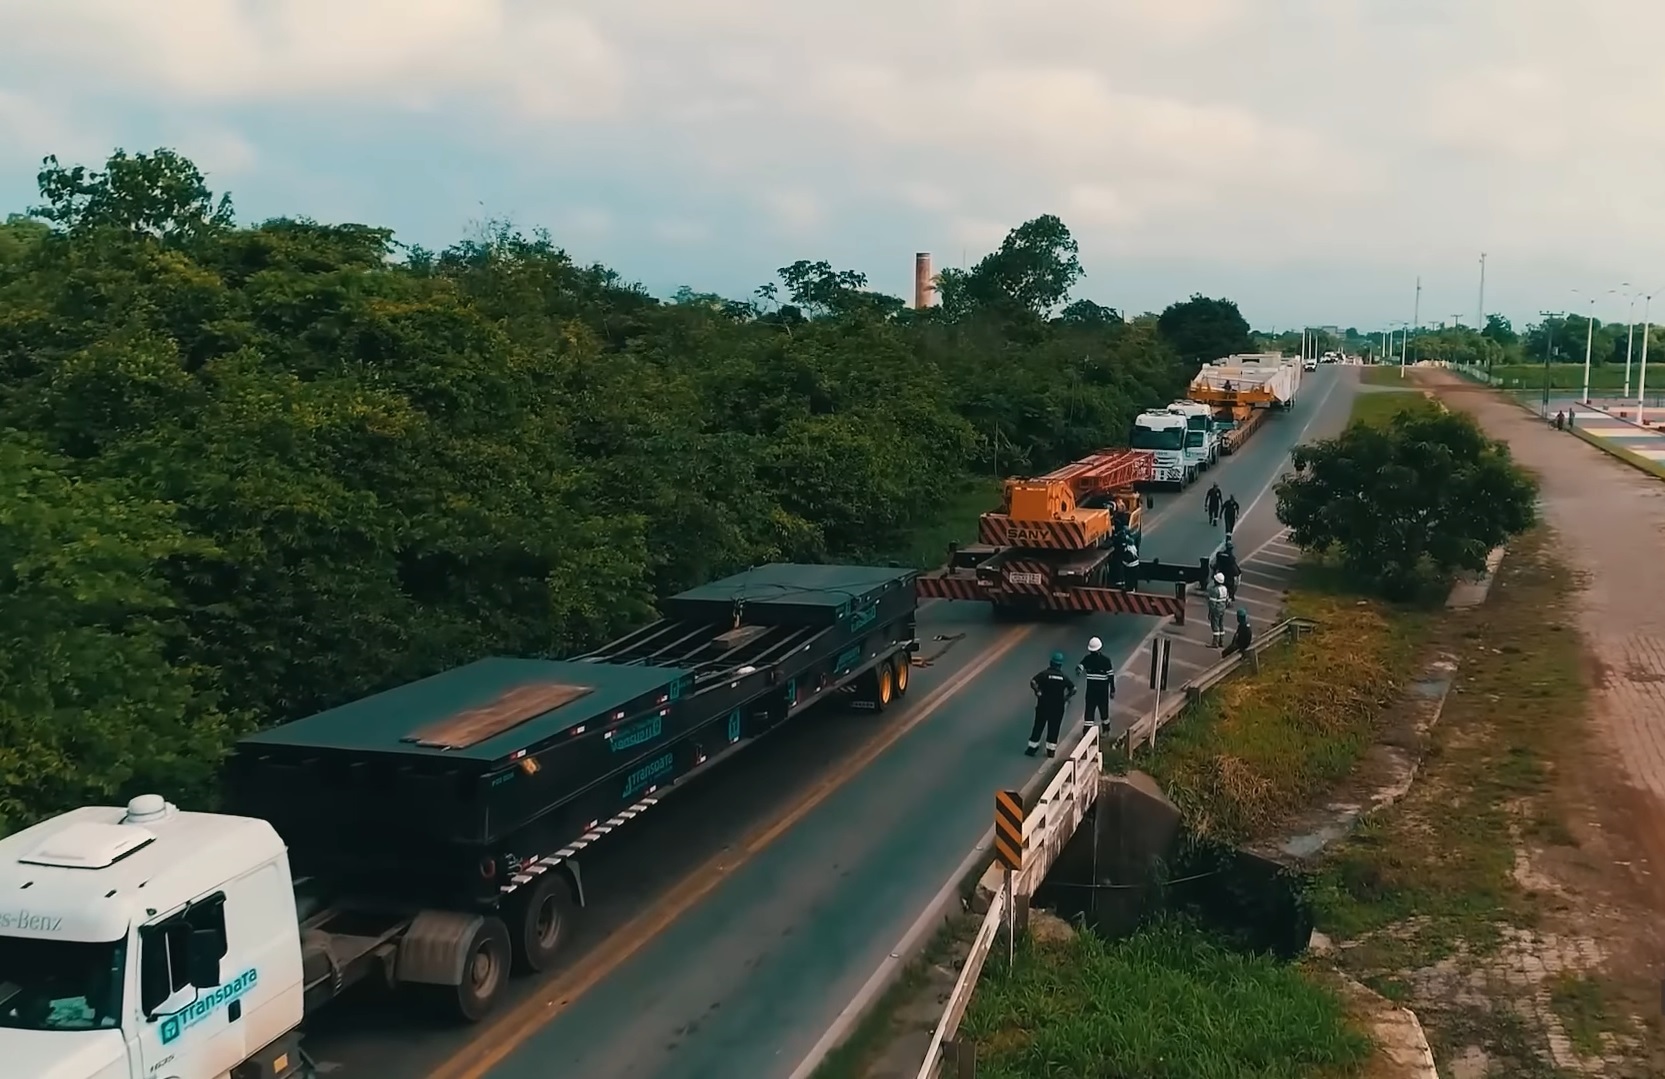 Uma realidade distinta, caminhões especiais transportam cargas imensas